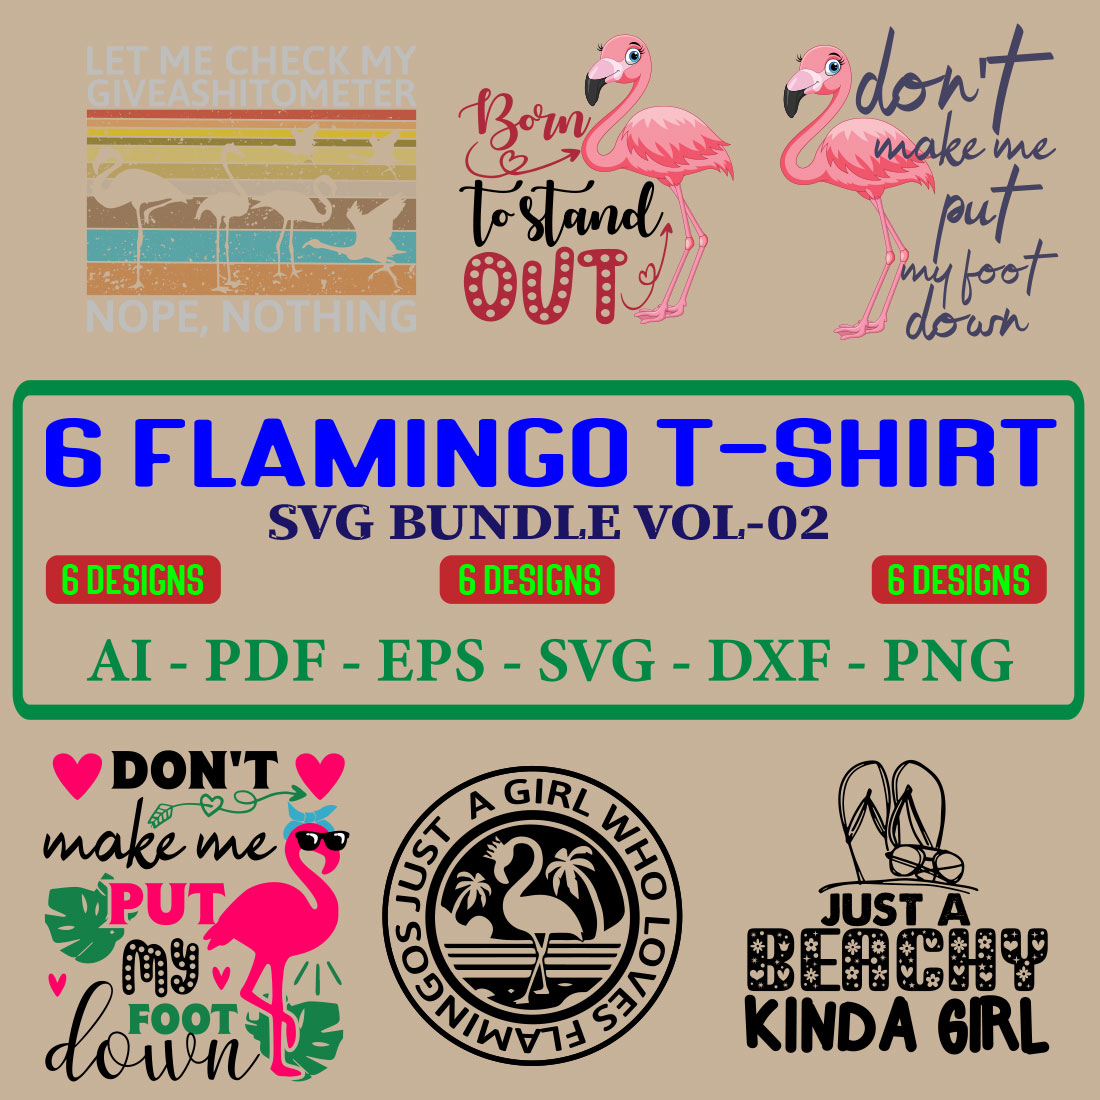 6 Flamingo T-shirt SVG Bundle Vol-02 cover image.